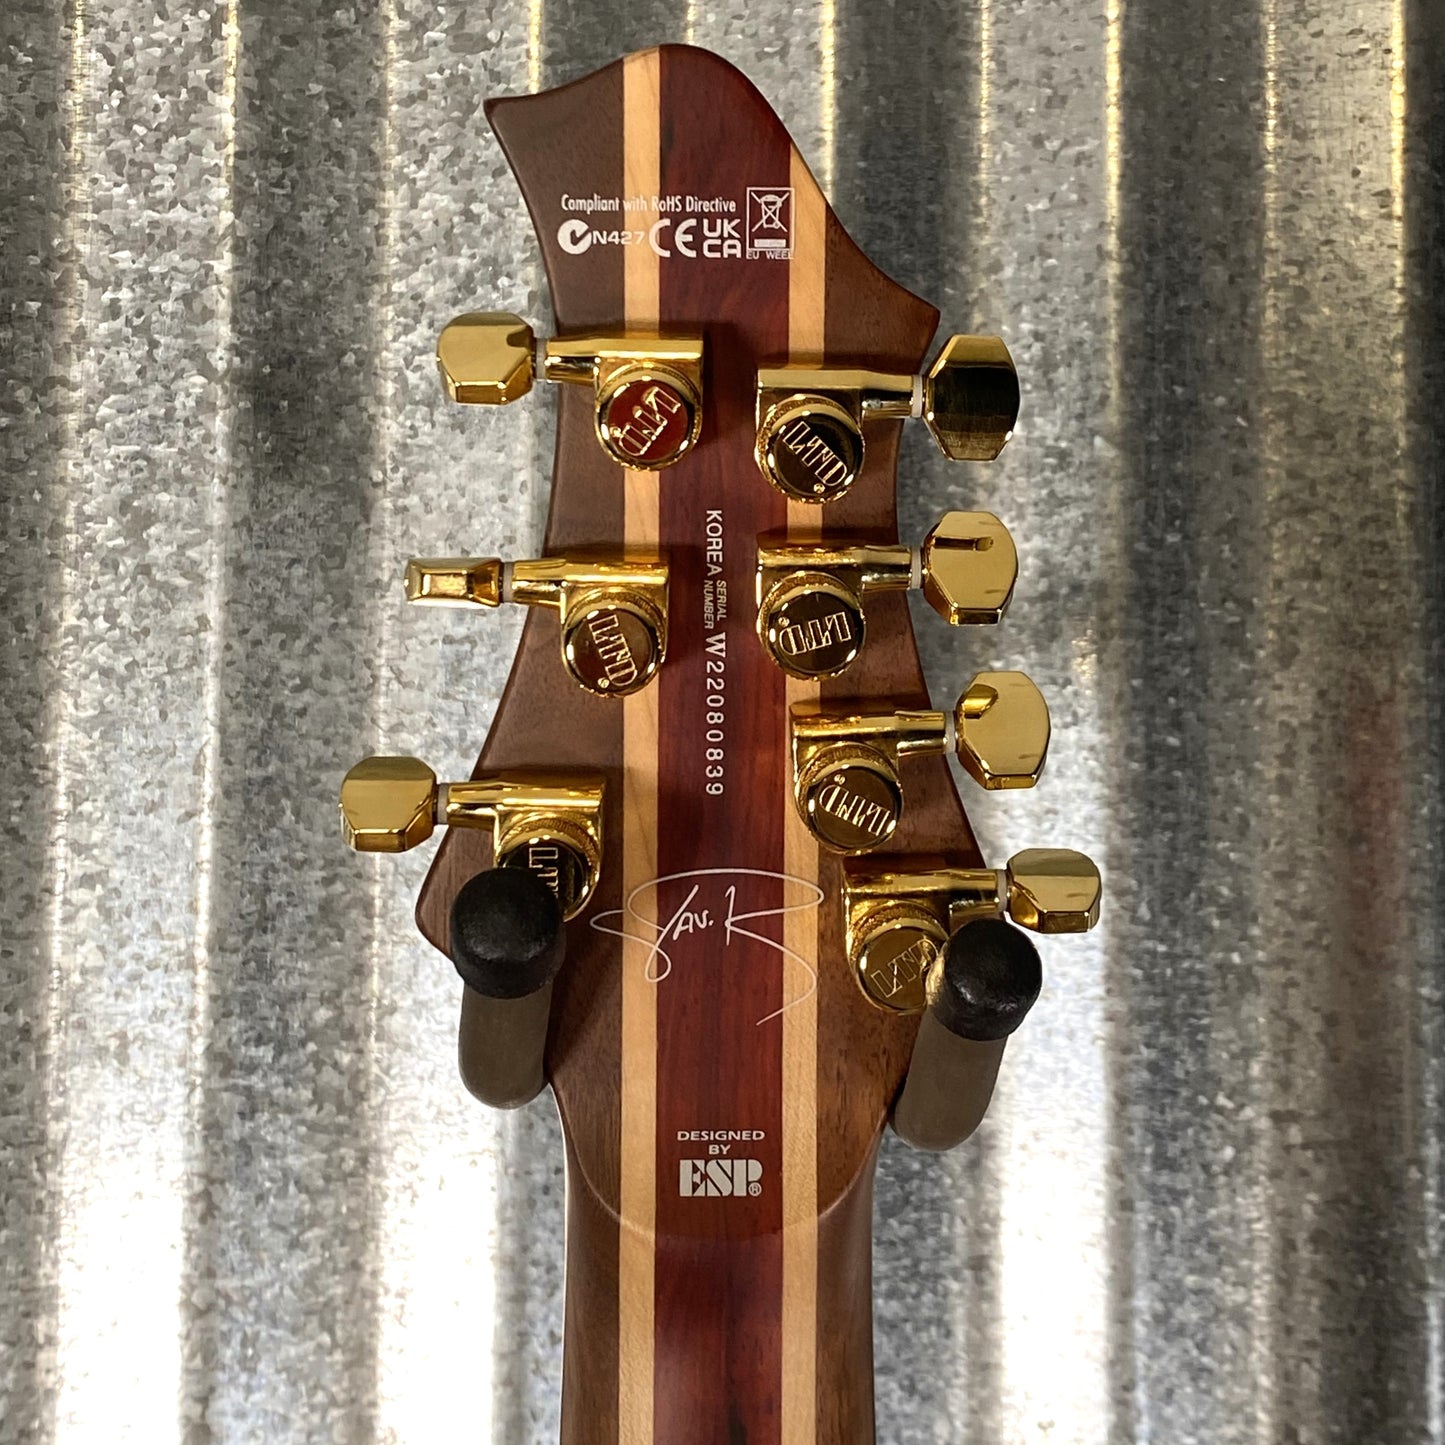 ESP LTD JR-7 Javier Reyes Quilt Fade Blue Sunburst 7 String Guitar & Case LJR7QMFBSB #0839 Used